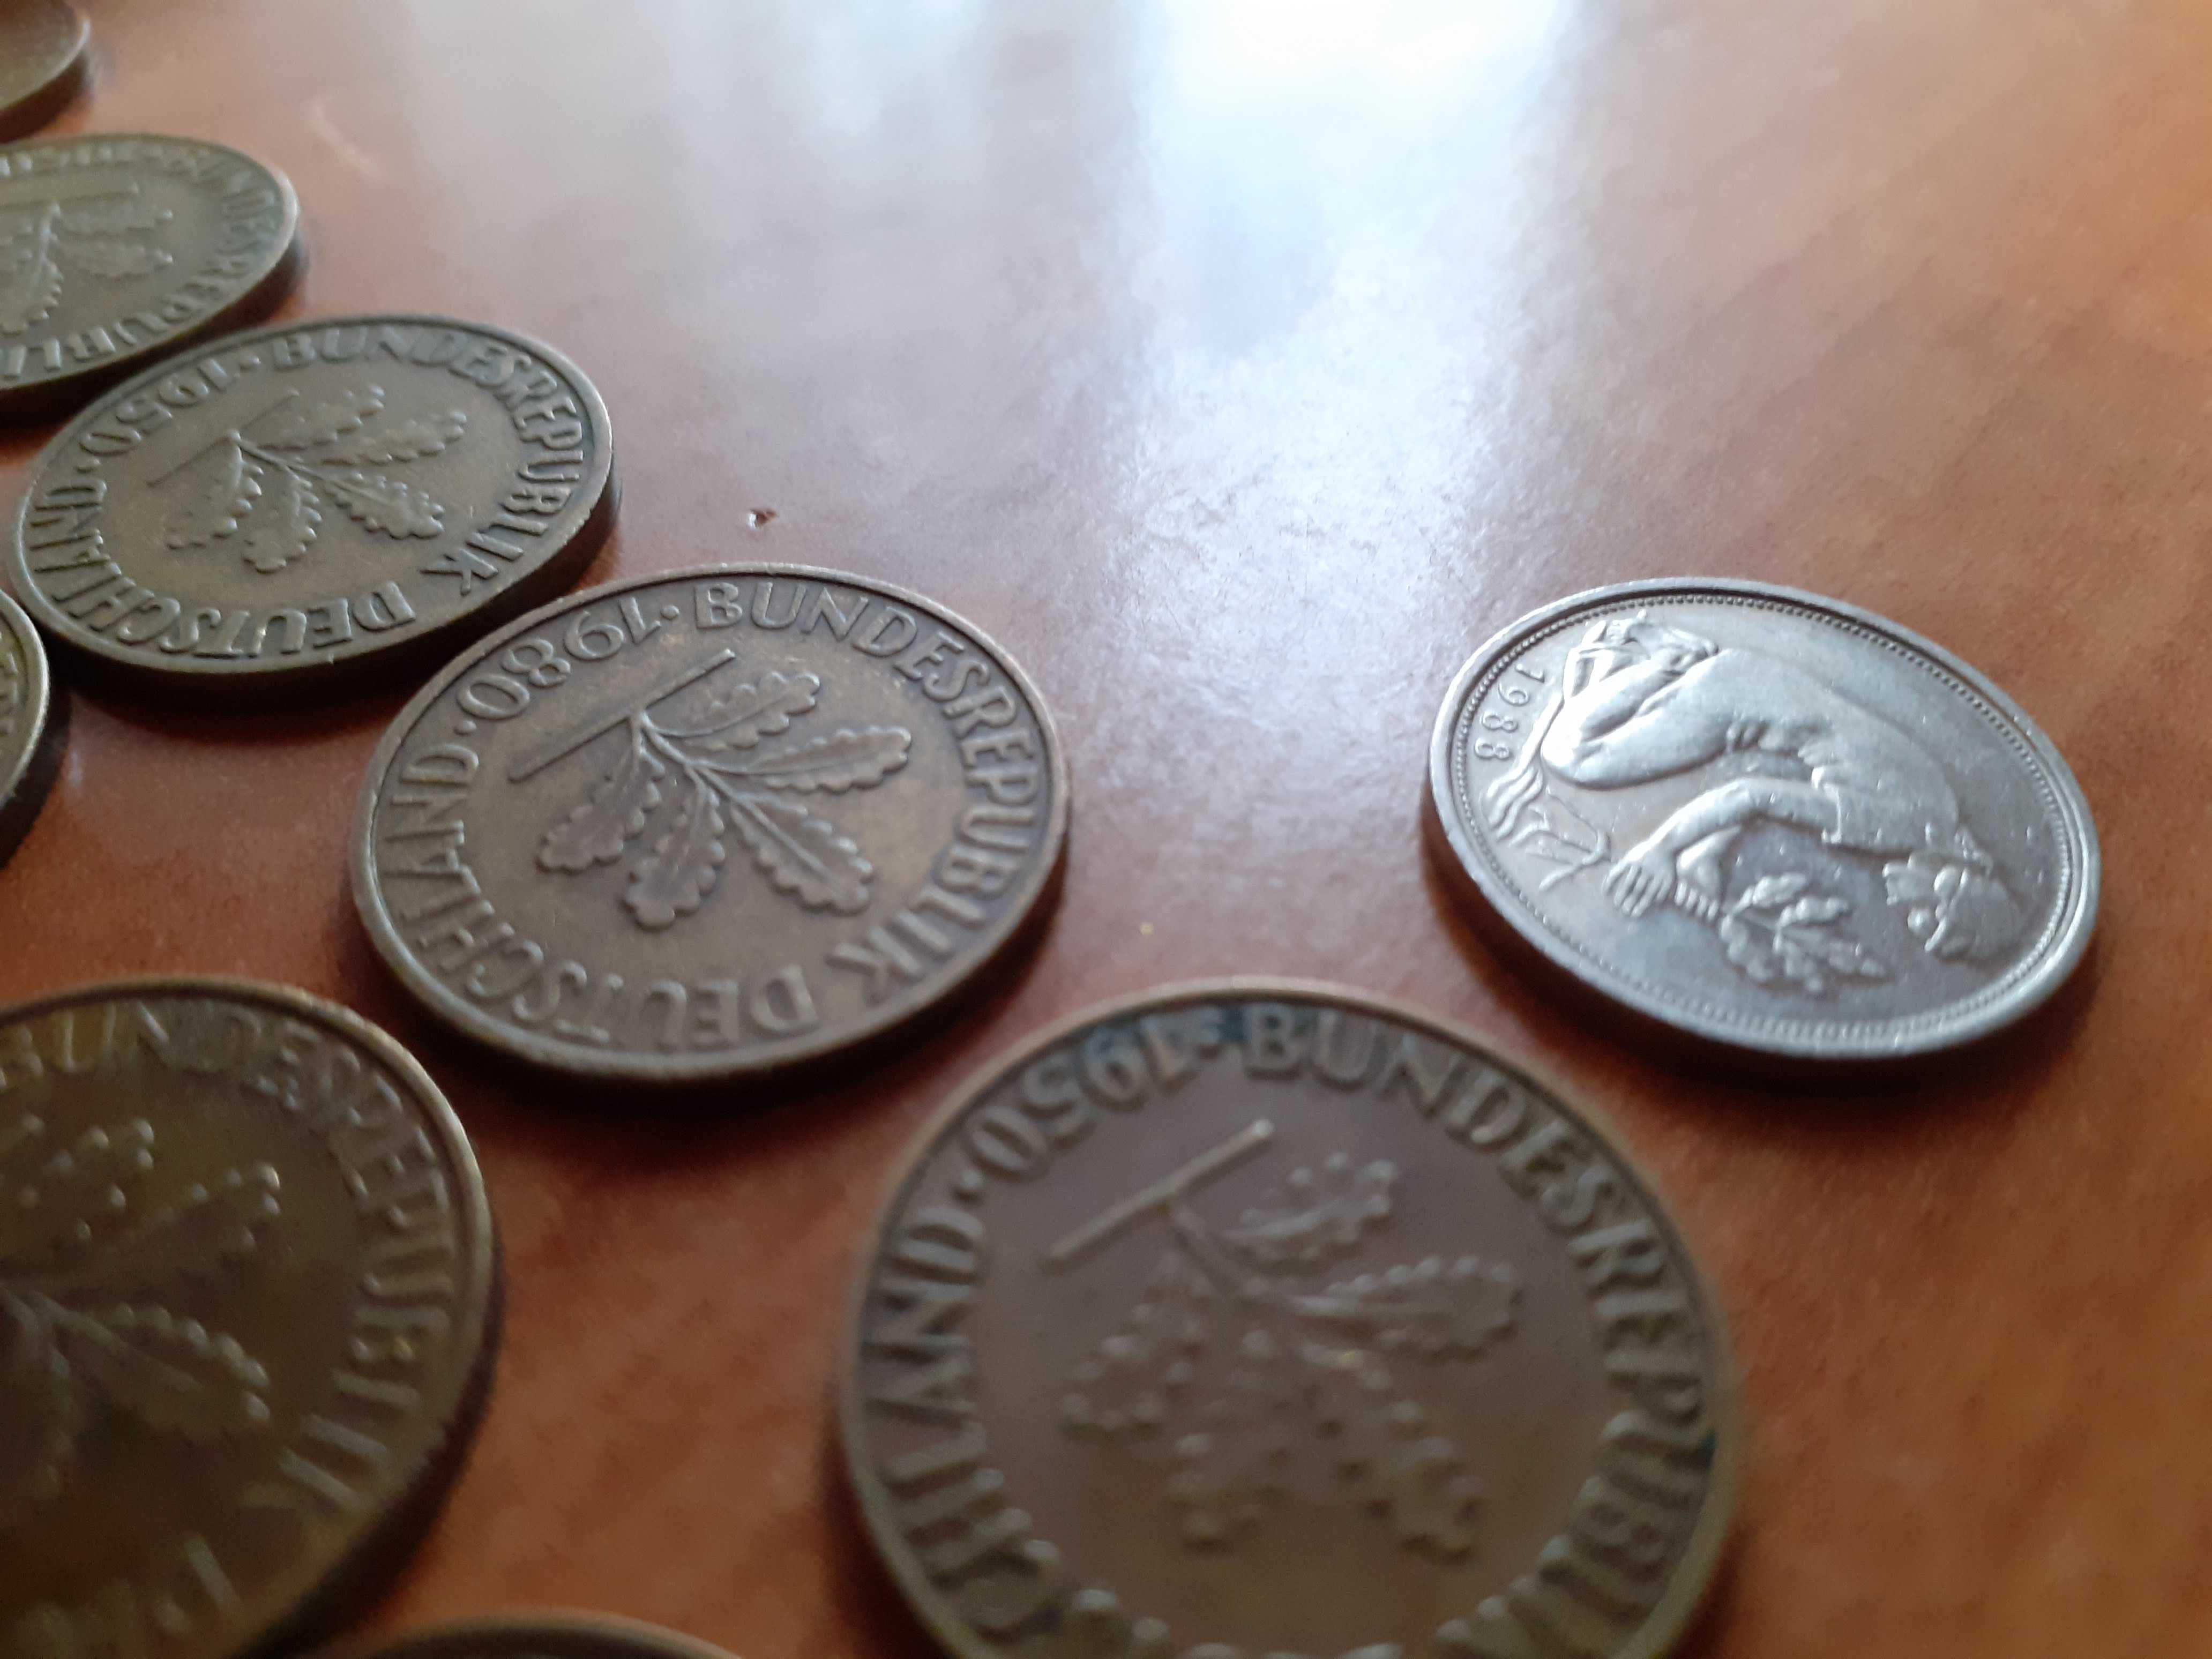 1 - 50 Pfennig Bundesrepublik Deutschland 1950 - 1993 PRL